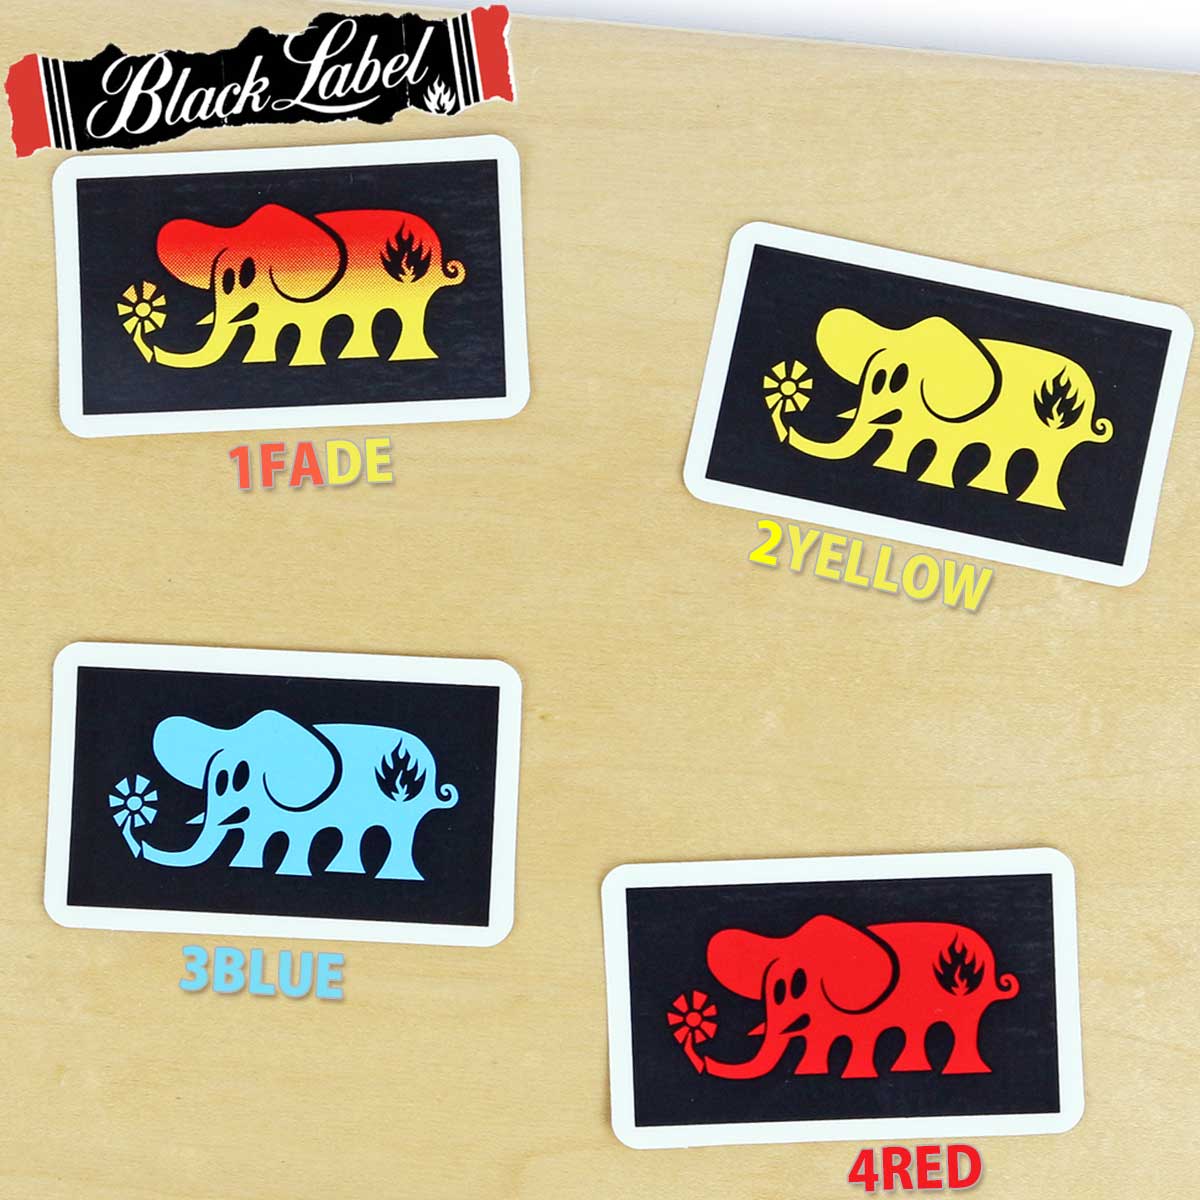 ■ブランドBLACK LABEL ブラックレーベル■商品名Elephant Sticker エレファントステッカー■カラー1FADE フェード 2YELLOW イエロー 3BLUE ブルー 4RED レッド■サイズ約 7.5 x 4.5 cm■商品情報Black Label Skateboardsは、1988年よりスケートボードとスケートボードアクセサリーを製造。 老舗のハードコアなイメージがかっこいいブラックレーベルブランド。 ステッカーベースは高品質スクリーン印刷で作られたビニールクリアなので耐水、耐久性があり切り抜いたように見えます。スケートボード - スケボー - スケボーステッカー - スケボー ブラックレーベル BLACK LABEL SKATEBOARDSTICKERELEPHANT こちらの商品はこんなジャンルで探している方から選ばれています スケートボード スケボー コンプリート コンプリートセット サーフスケート デッキ トラック ウィール ベアリング ハードウェア ネジ ボルト ナット ステッカー スケボーシューズ スケシュー SB サーフィン サーフ ロングボード ショートボード ダウンヒル スノーボード スノボー 　 　 こちらの商品はこんなスケボーブランドで探している方から選ばれています サンタクルーズ エレメント ガール チョコレート リアル アンチヒーロー クルキッド セクターナイン ヤウ カーバー ウッディープレス スラスター グローブ ペニー ファッキンオーサム ホッキー ソバーン ドゥームセイヤーズ スラッシャー ローカード ドッグタウン ブランク インディペンデント ベンチャー サンダー クラックス テンサー トラッカー ゼロ スピットファイア スピットファイヤ リクタ ボーンズ パウエル パウエルペラルタ OJ エスボード リップスティック ブレイブボード カットバック 　 　 こちらの商品はこんなスケボースペックで探している方から選ばれています 7.375 7.5 7.6 7.75 7.81 8.0 8.1 8.25 8.5 8.6 inch インチ 50 51 52 53 54 55 56 57 58 59 60 mm ミリ ソフトウィール ハードウィール 80HD 90a 95a 99a 100a 101a 90d 95d 99d 100d 101d DURO ABEC7 ABEC5 　 　 こちらの商品はこんなシューズブランドで探している方から選ばれています バンズ ニューバランス コンバース エス エメリカ エトニーズ ラカイ コンズ CONS アシックス アディダス ナイキ 　 　 こちらの商品はこんな目的で探している方から選ばれています 大人 大人用 子供 子供用 キッズ 初心者 おすすめ オススメ 初めての 交換 修理 メンテナンス リビルト プレゼント クリスマス こどもの日 誕生日 彼氏 彼女 友達 お祝い 贈り物 安い お得 珍しい レア 陸トレ 練習 トレーニング 体幹 体幹トレーニング ダイエット エクササイズ 運動 オシャレ かっこいい ストリート スポーツ クルーザー ちょっとした移動 評判 評価 良い 人気 巣ごもり 一人で遊べる 夏休み 冬休み 春休み 関連商品はこちらサンタモニカエアライン スケボー ステ...440円インディペンデント スケボー ステッカ...330円インディペンデント スケボー ステッカ...330円インディペンデント スケボー ステッカ...330円インディペンデント スケボー ステッカ...330円インディペンデント スケボー ステッカ...330円インディペンデント スケボー トラック ...9,900円スケボー スケート ワックス トイマシー...990円トイマシーン スケボー スケート デッキ...1,650円AQUA RIDEO アクアリデオスケボー スケ...16,500円トイマシーン チェアセット スケボー ス...7,920円AQUQRIDEO アクアリデオスケボー スケー...4,180円